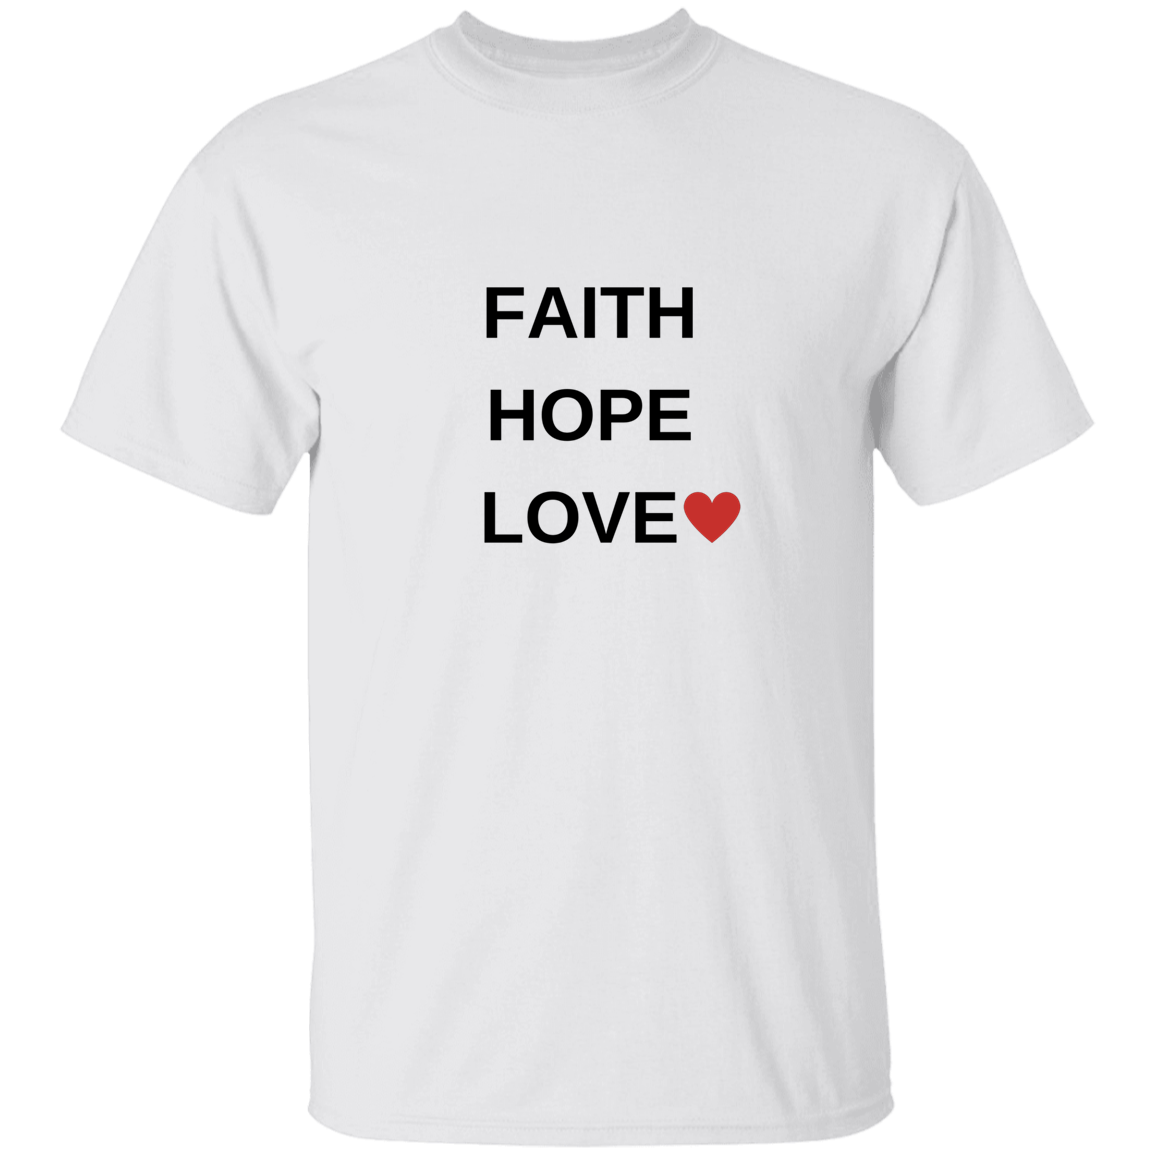 Christian | T-Shirt | Faith, Hope, Love | Assorted Colors